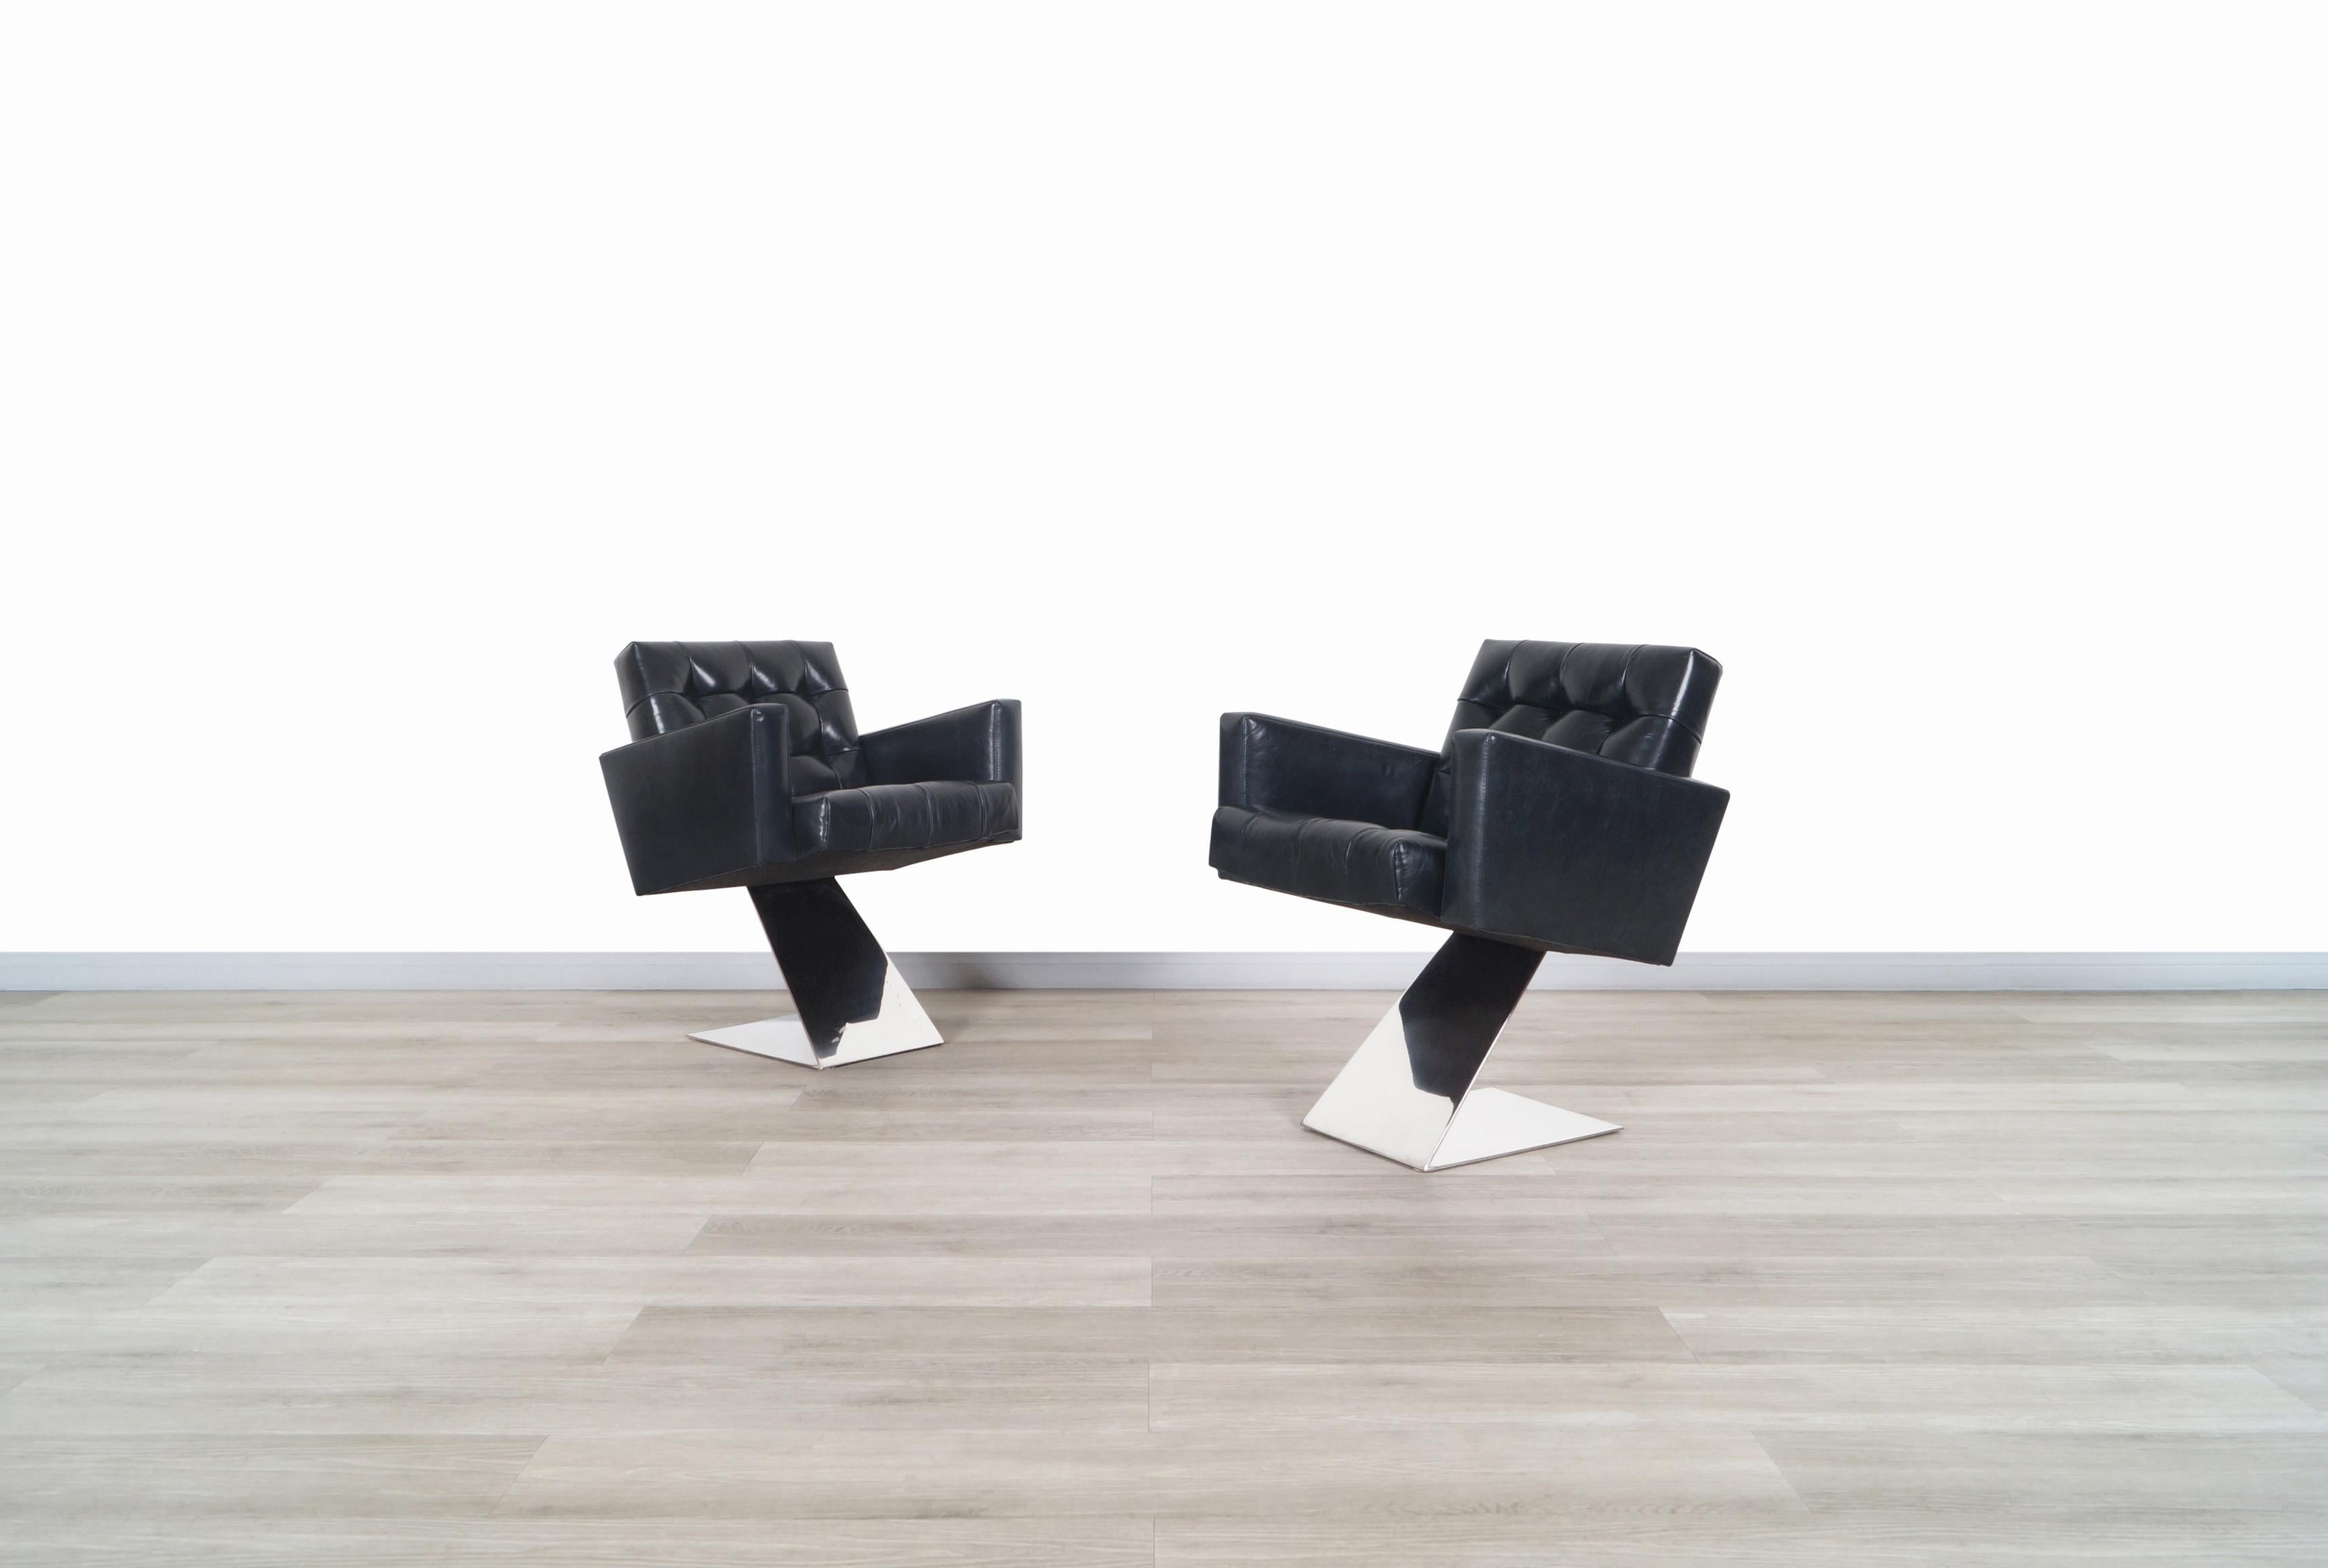 Atemberaubende Vintage-Loungesessel aus Edelstahl, entworfen von der Designikone Milo Baughman für Thayer Coggin in den Vereinigten Staaten, ca. 1970er Jahre. Diese Stühle haben ein innovatives und gewagtes Design, wenn man bedenkt, in welchem Jahr